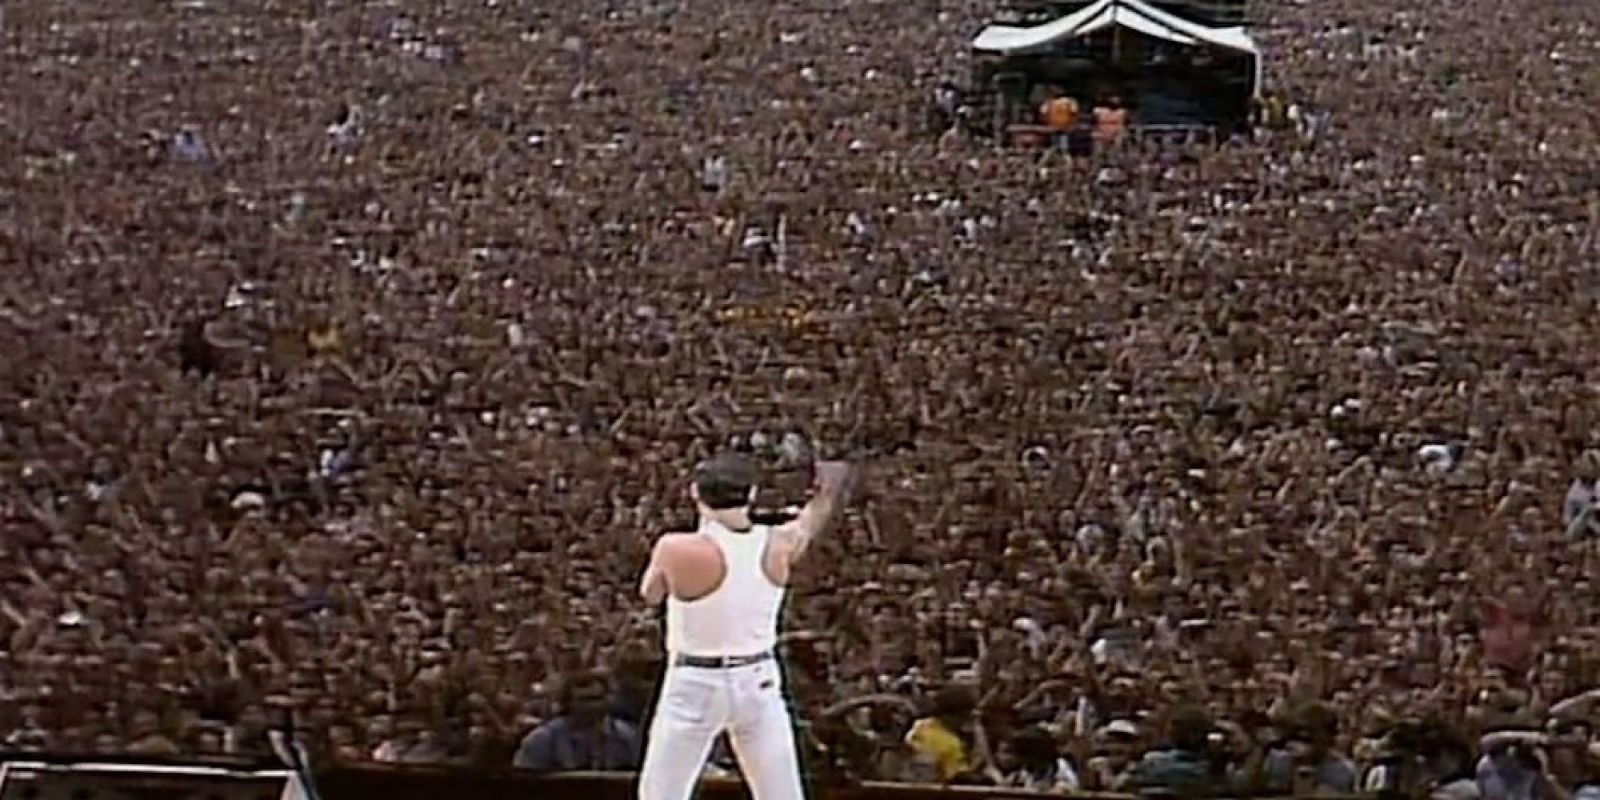 Queen sa na Live Aid stala nesmrteľnou legendou, ktorá sa zapísala do análov rockovej hudby